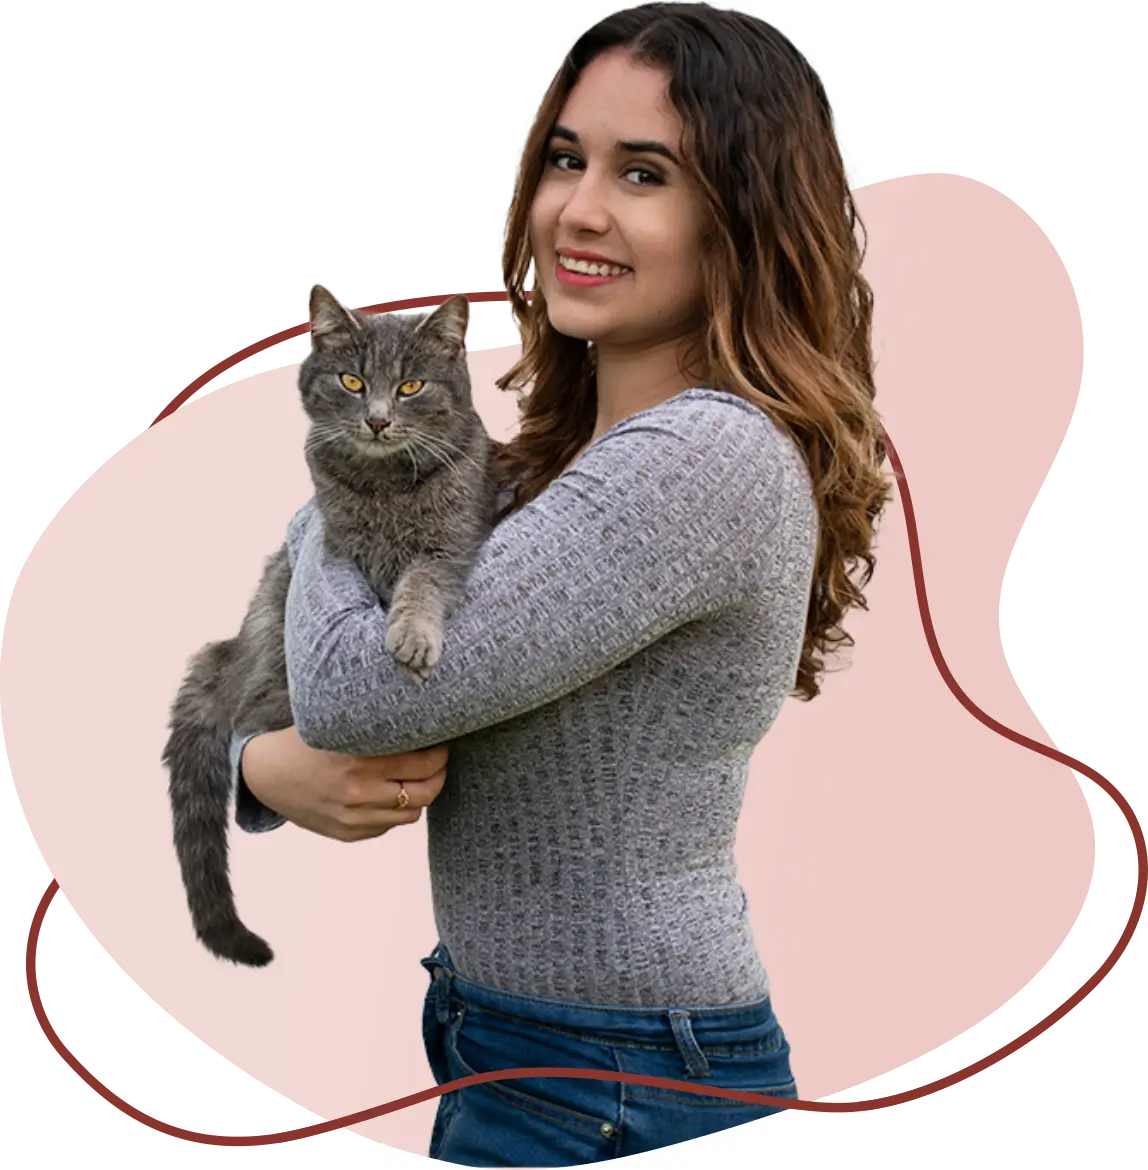 Bild von Lidia Moscu mit einer Katze im Arm